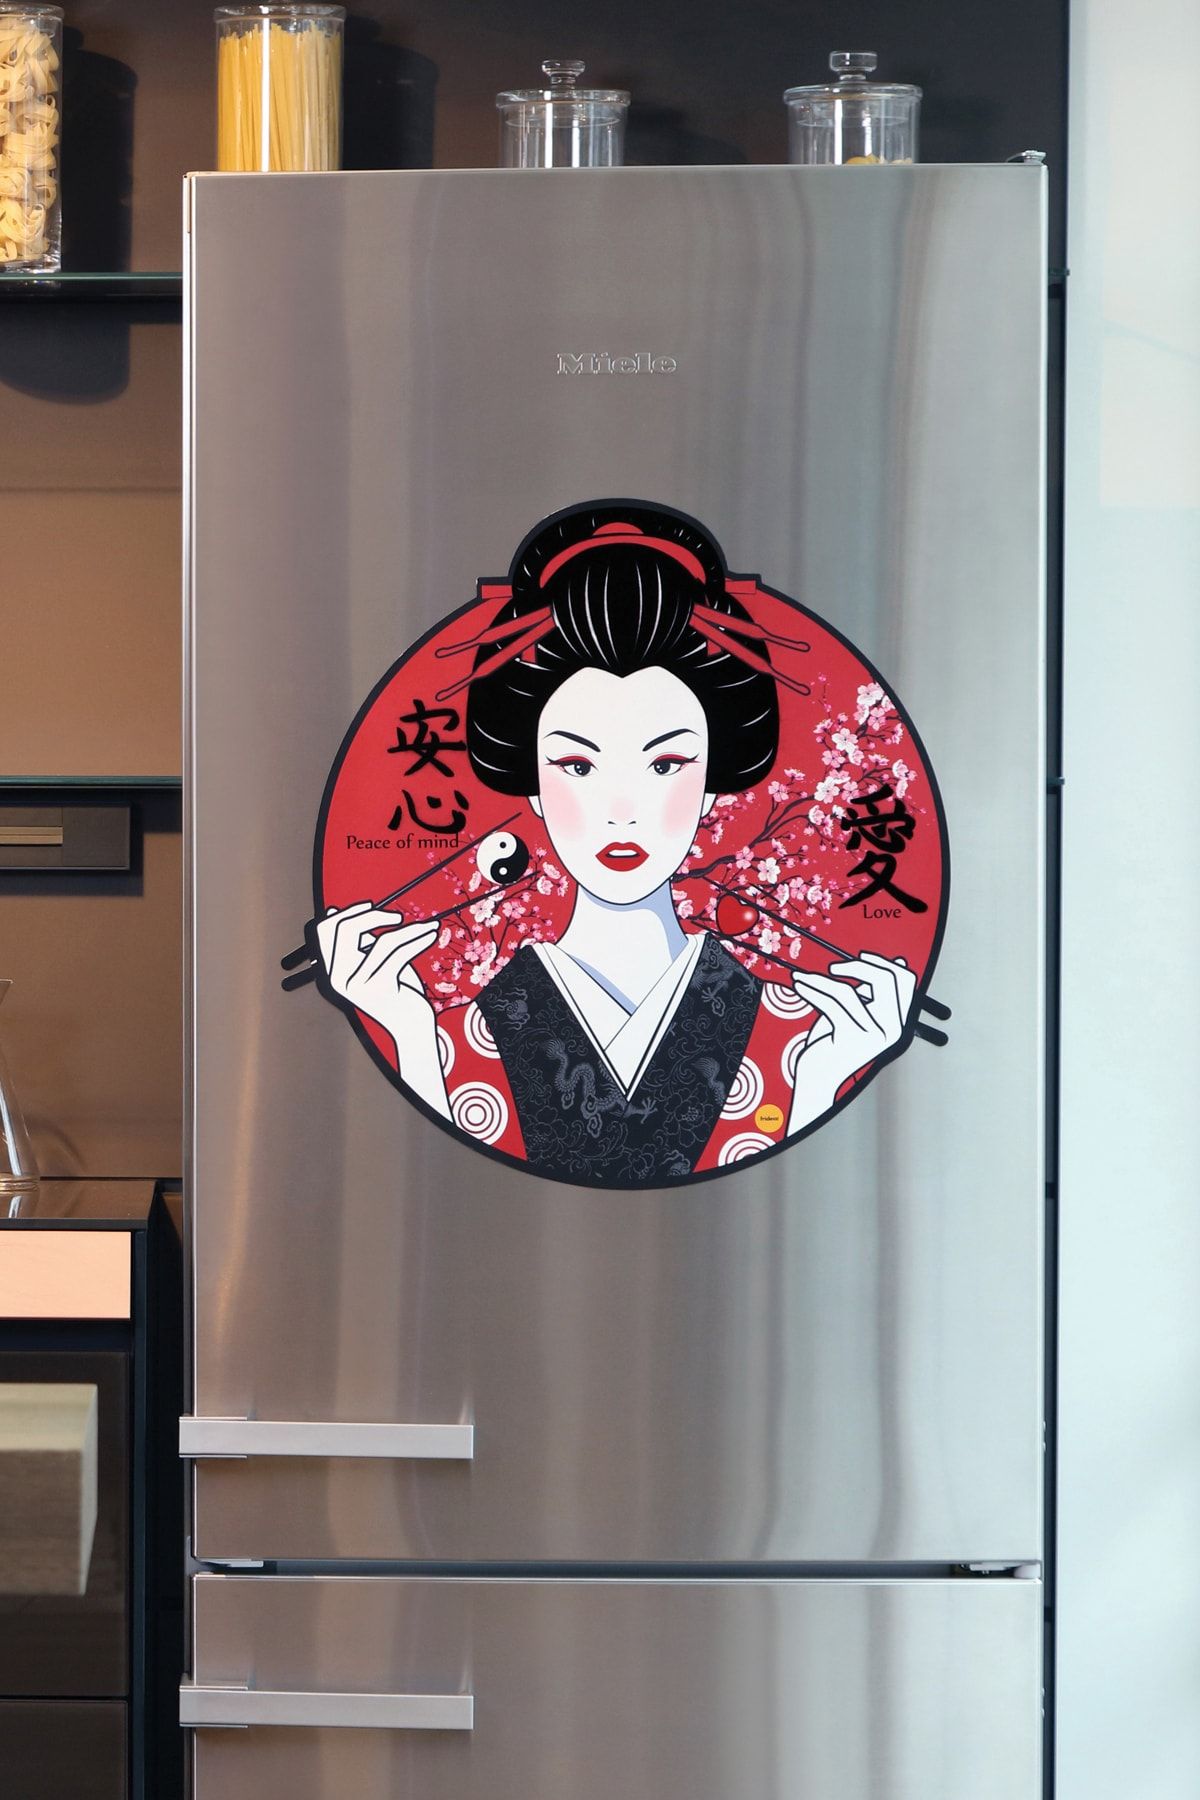 frideco Geisha Büyük Boy Dekoratif Buzdolabı Magneti (Siyah-kırmızı Flok Baskı) 57 Cmx60 Cm